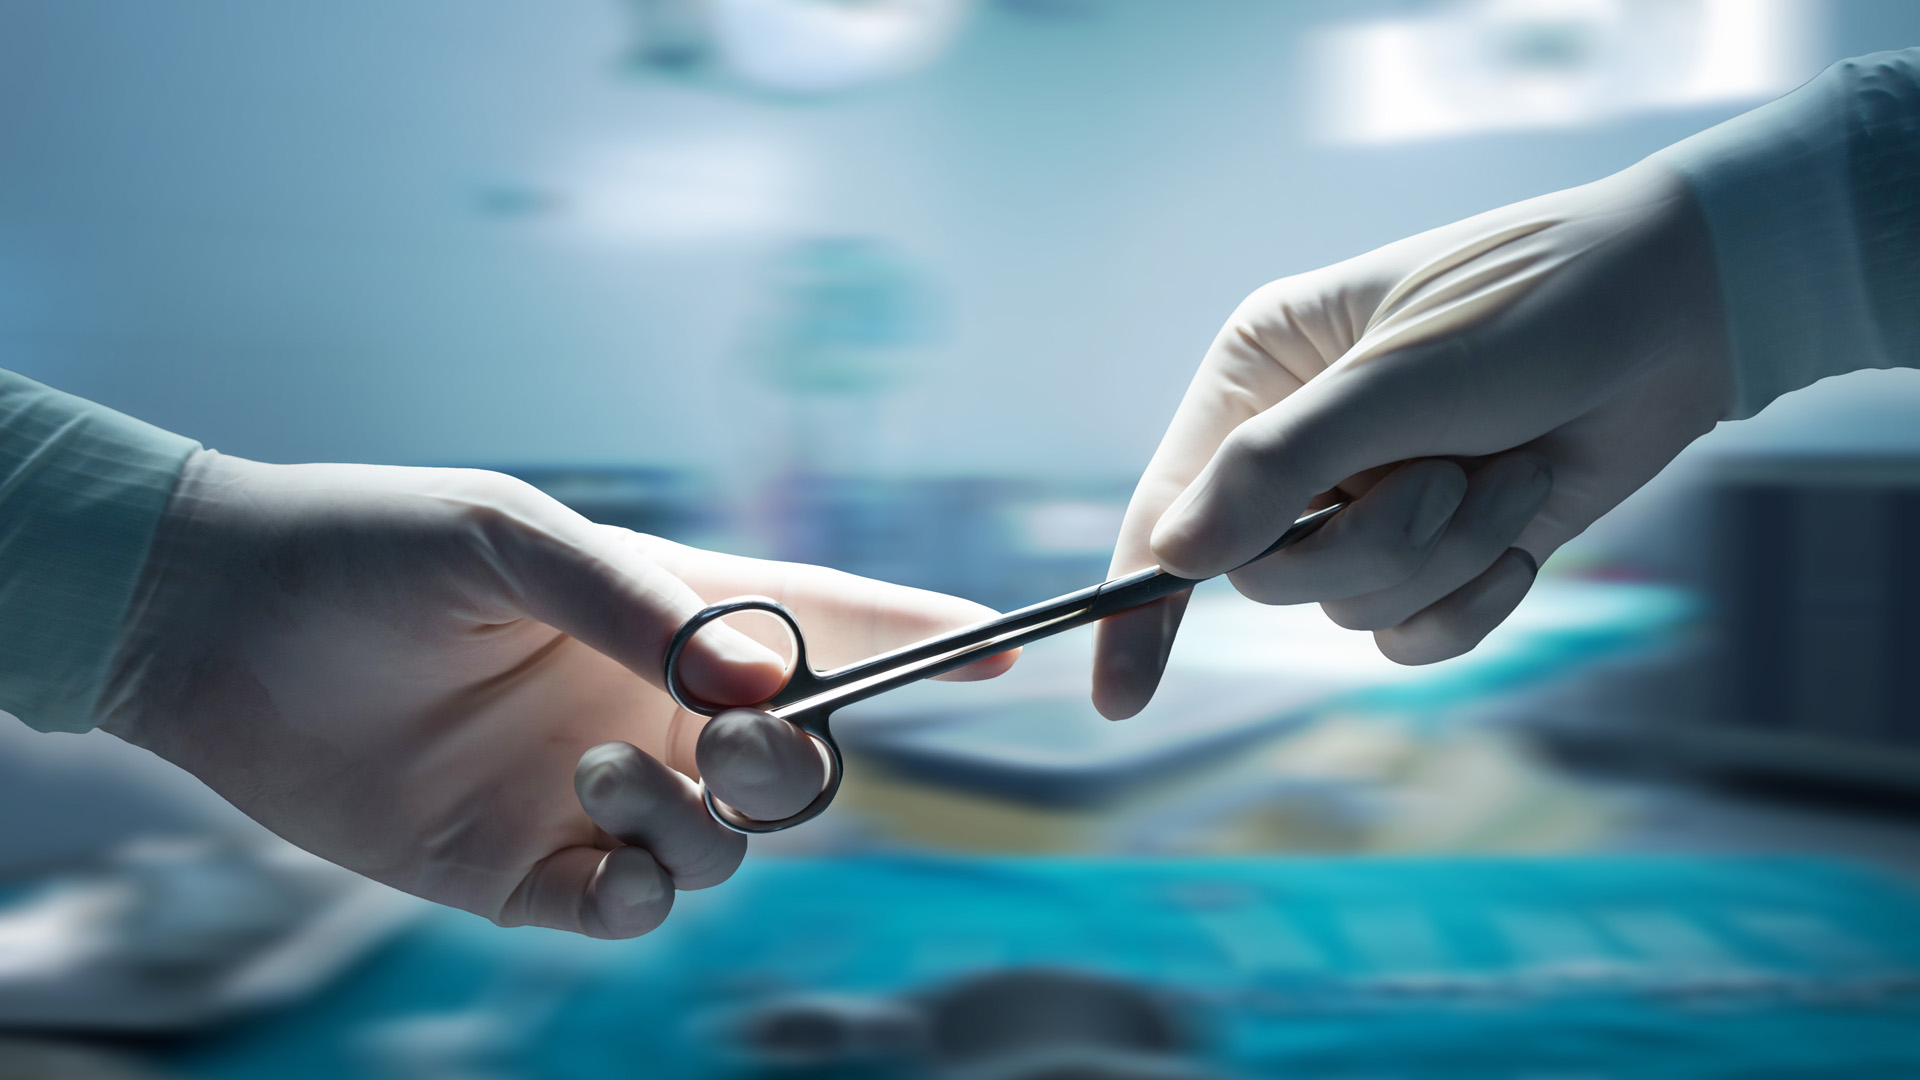 vazektómia ondóvezeték-elkötés férfi fogamzásgátlás sterilizálás